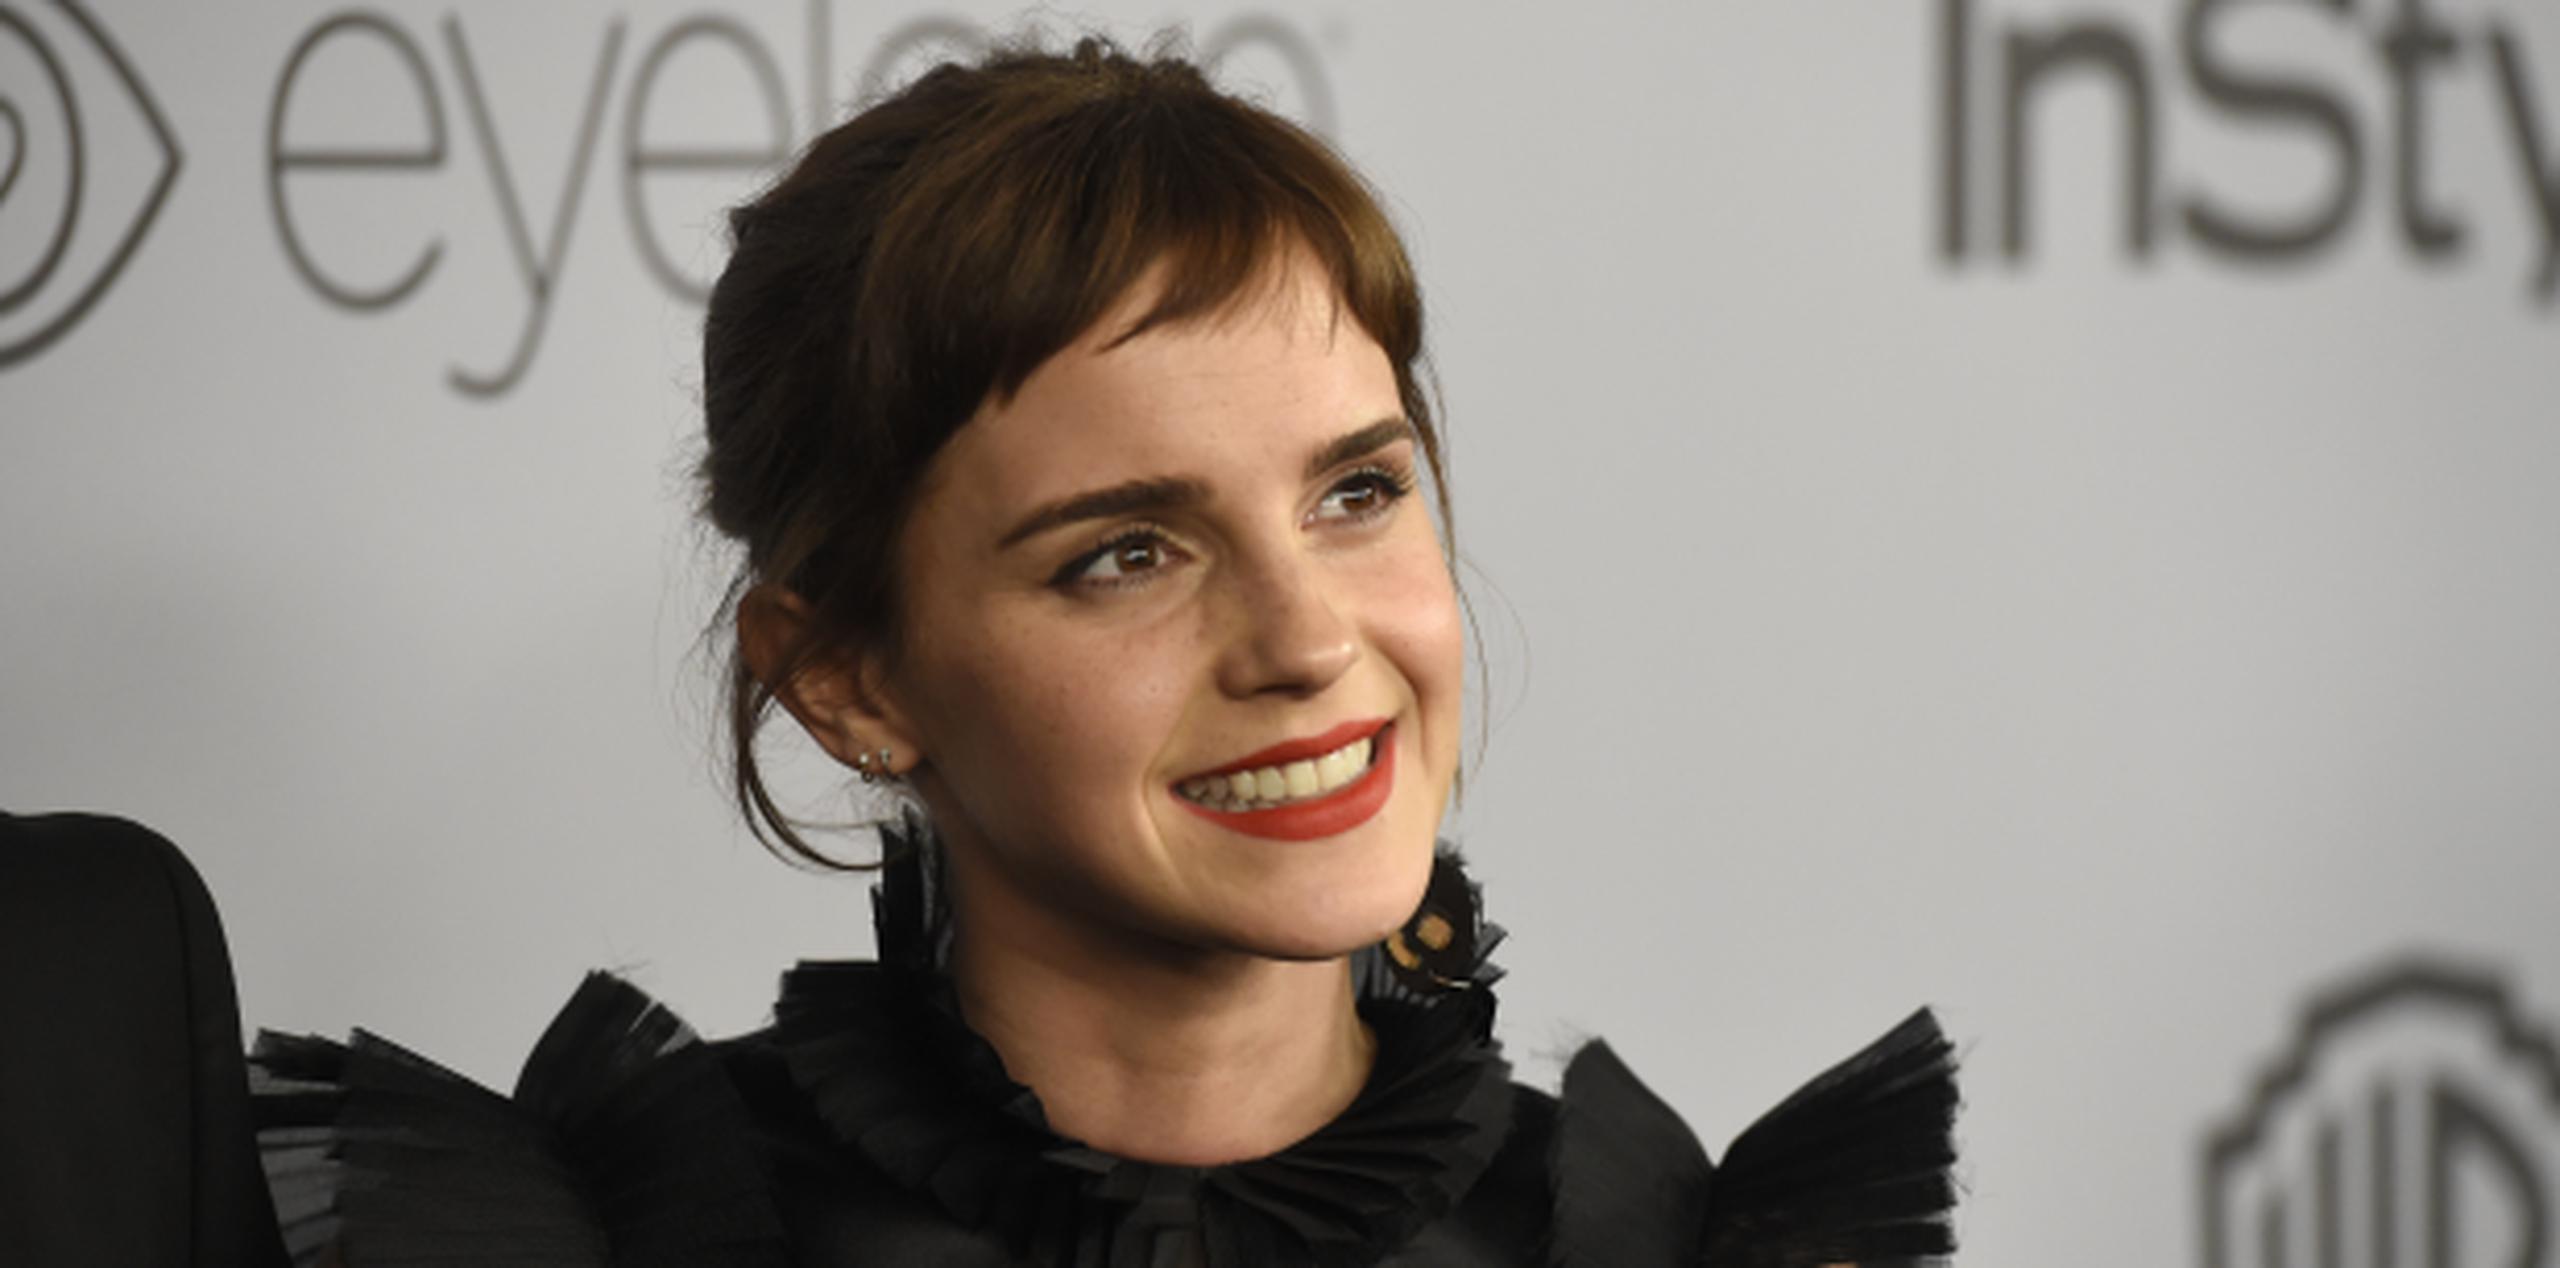 La actriz británica Emma Watson se caracteriza por ser una feminista militante. (AP)